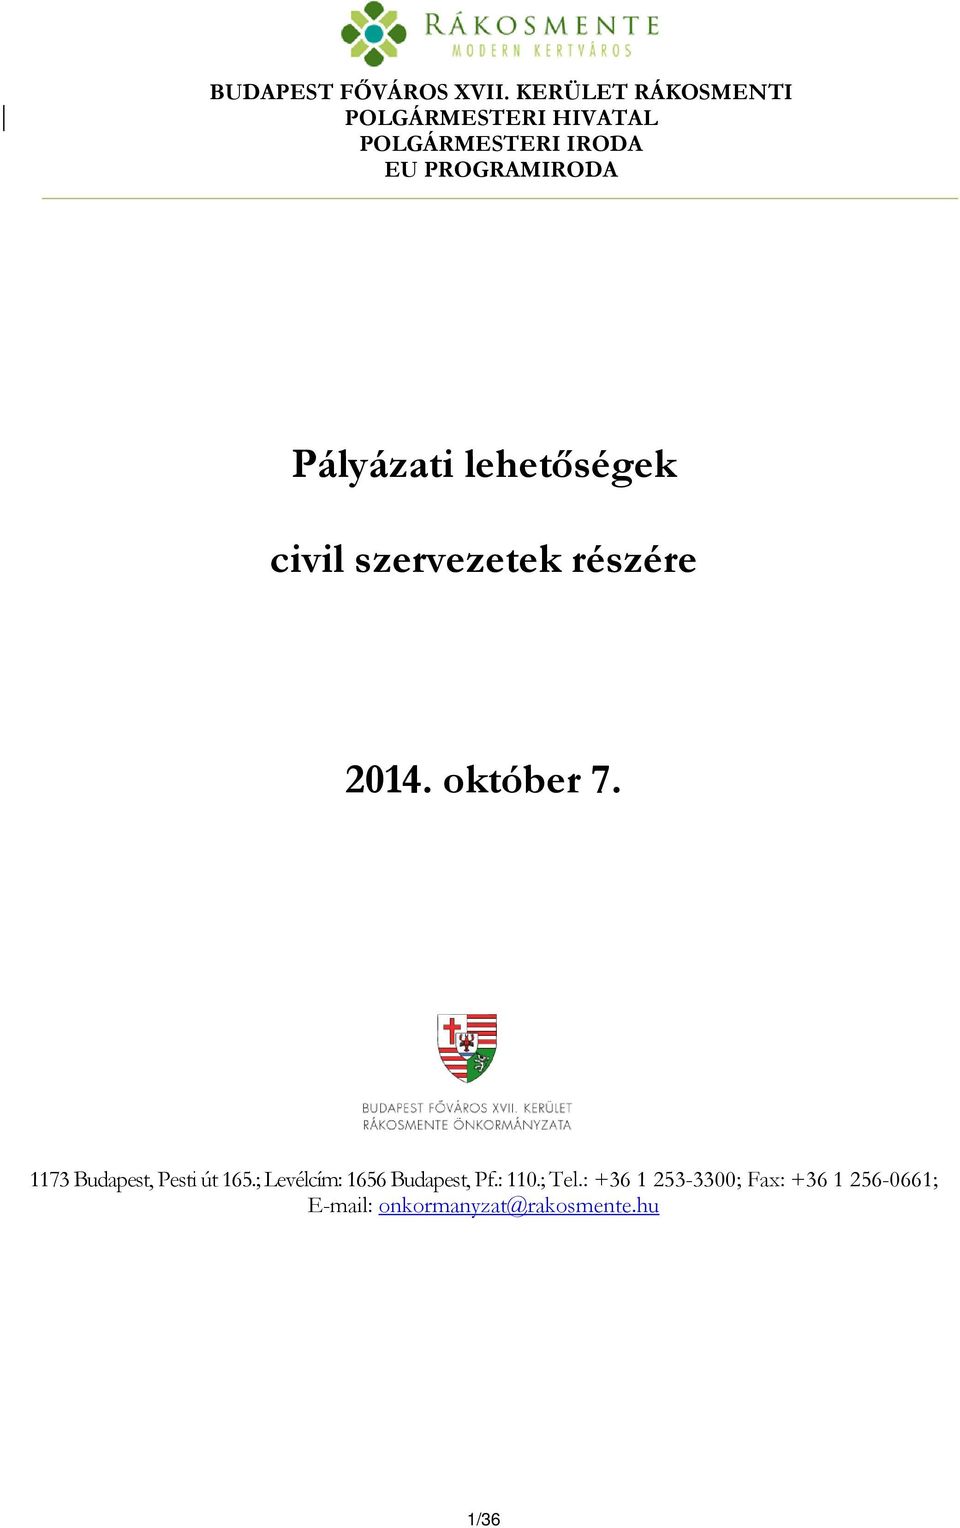 Pályázati lehetőségek civil szervezetek részére 2014. október 7.